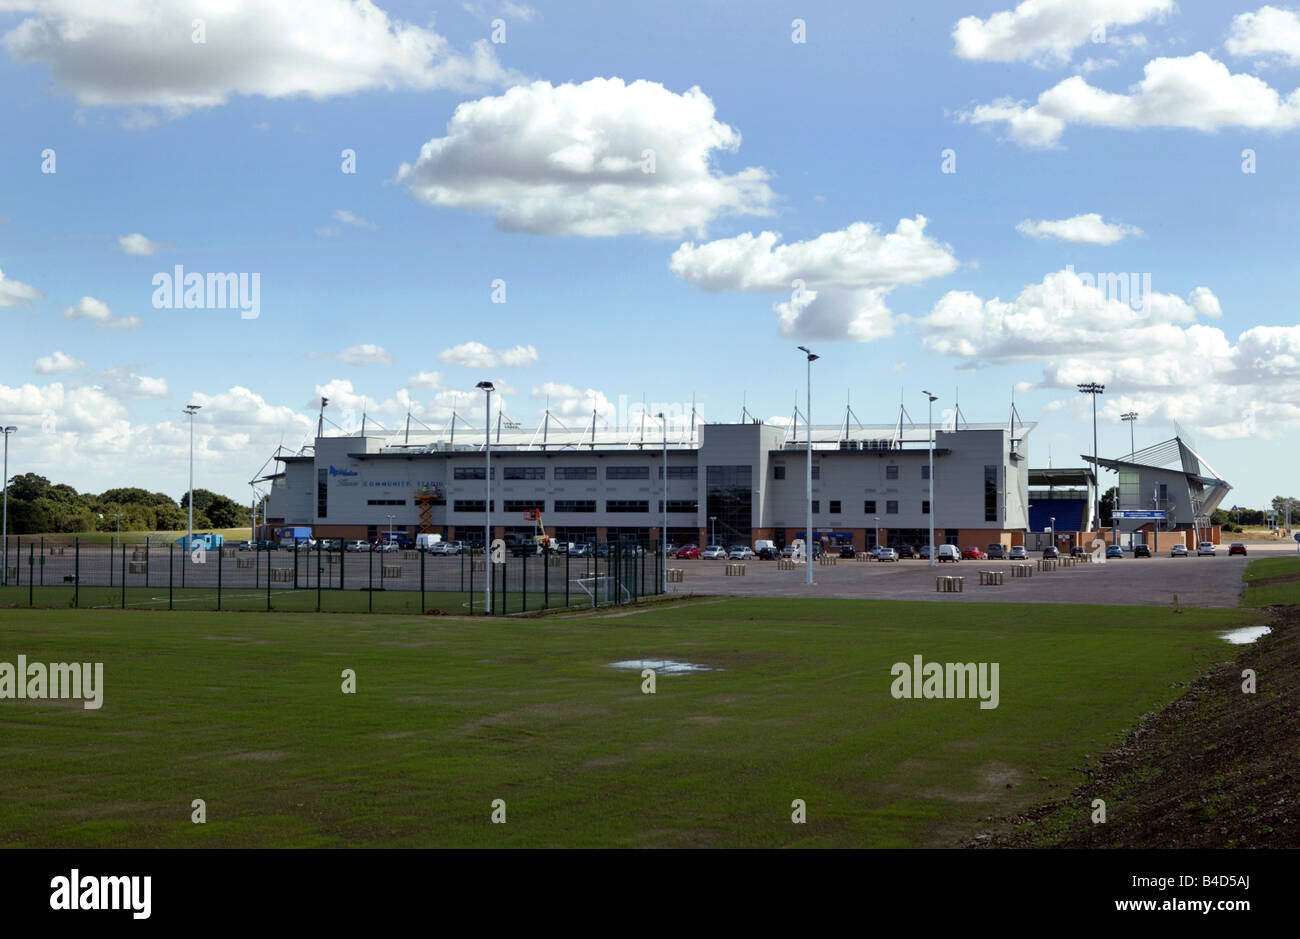 Das Watson Häuser Gemeinschaft Stadion die neue Heimat von Colchester united Fußballverein in Essex UK Stockfoto